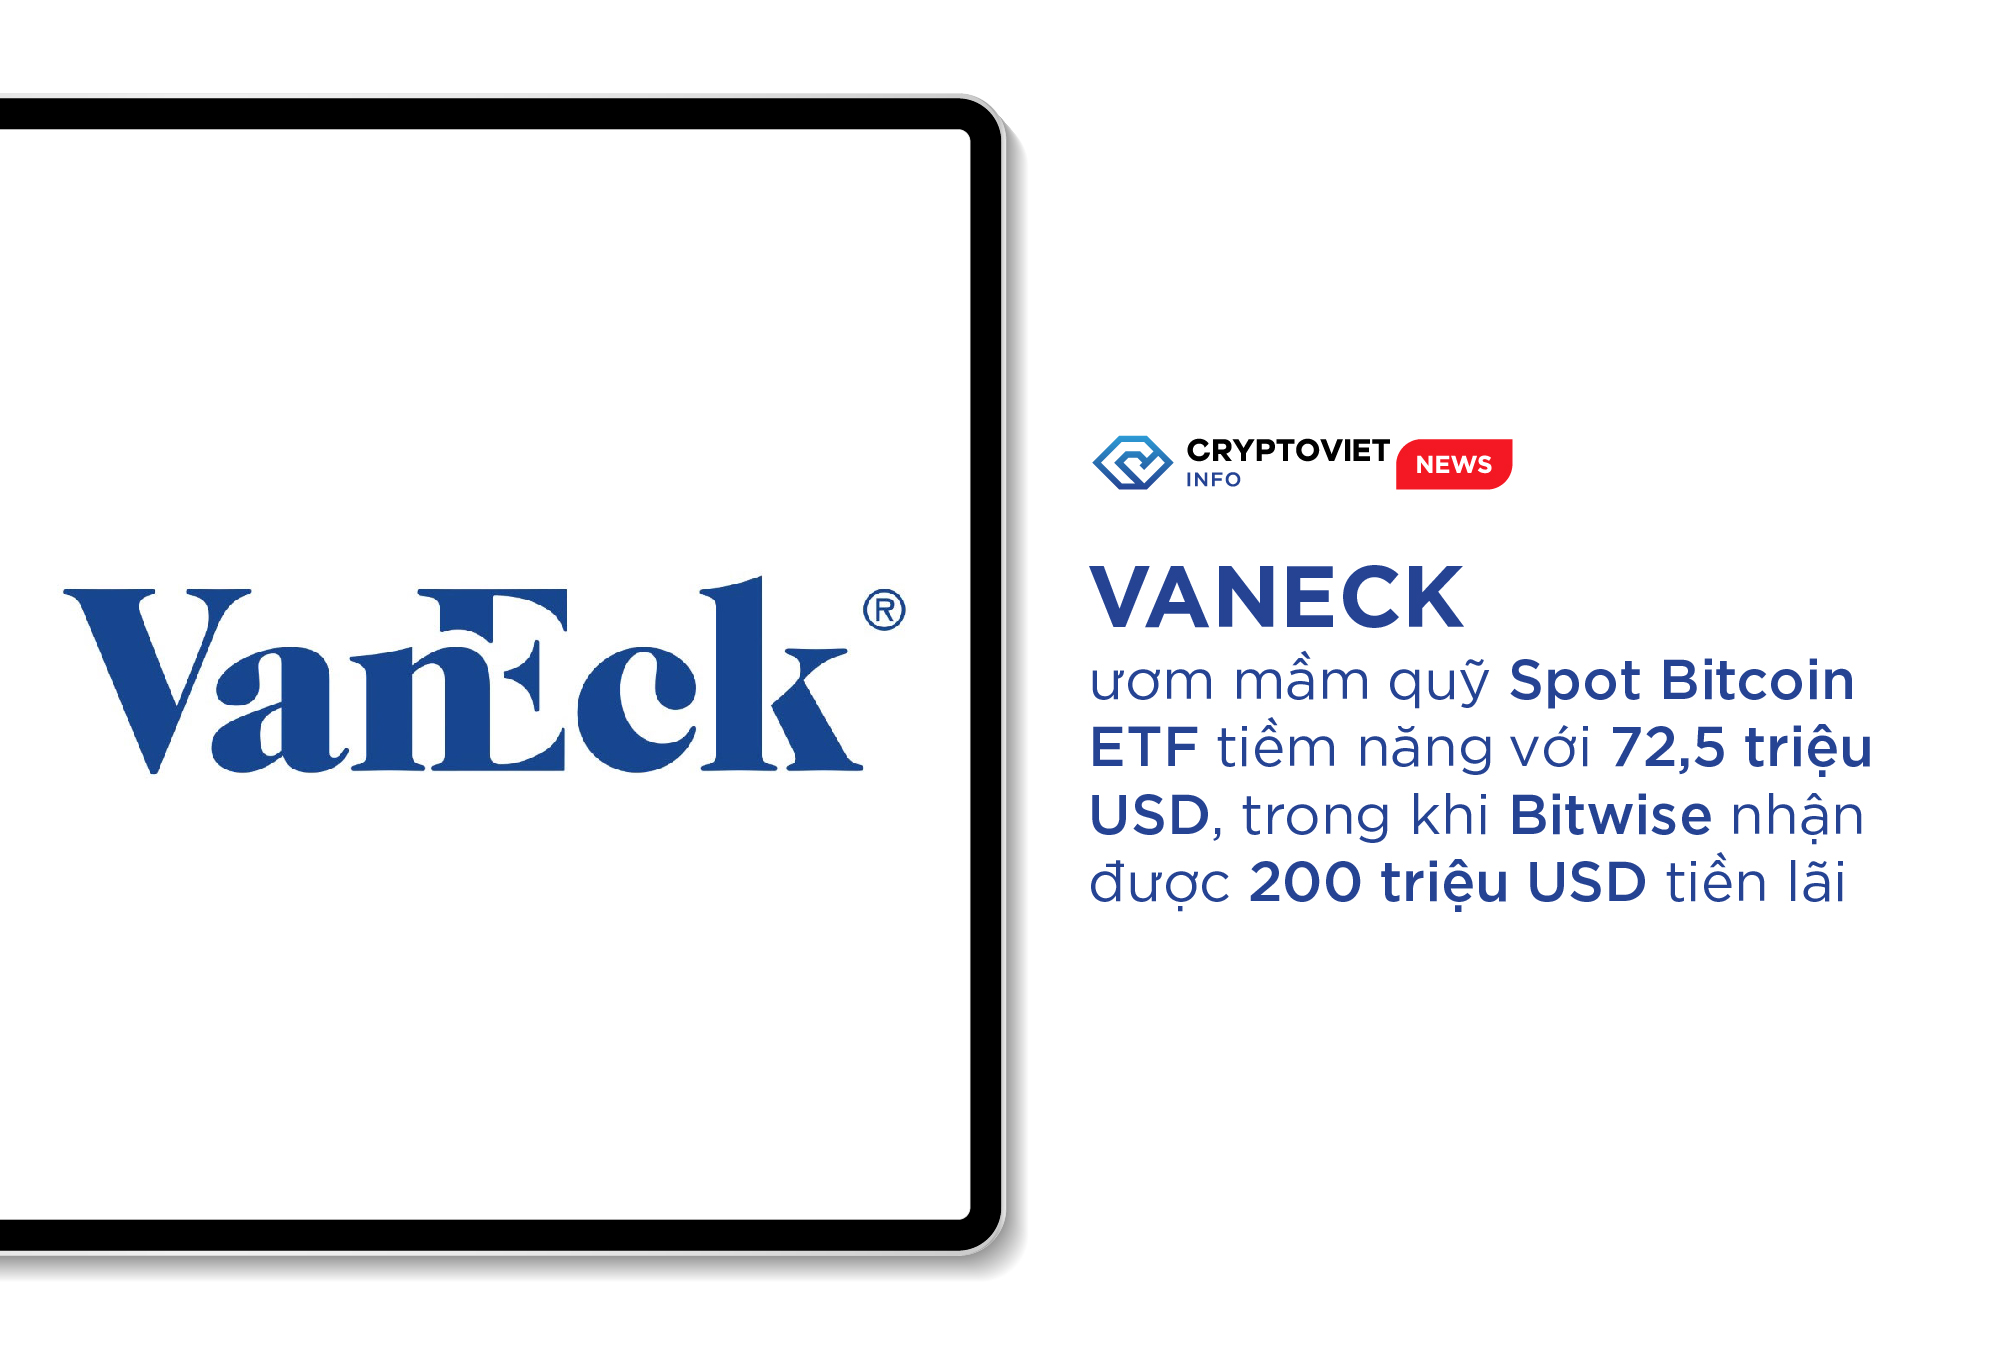 VanEck ươm mầm quỹ Spot Bitcoin ETF tiềm năng với 72,5 triệu USD, trong khi Bitwise nhận được 200 triệu USD tiền lãi